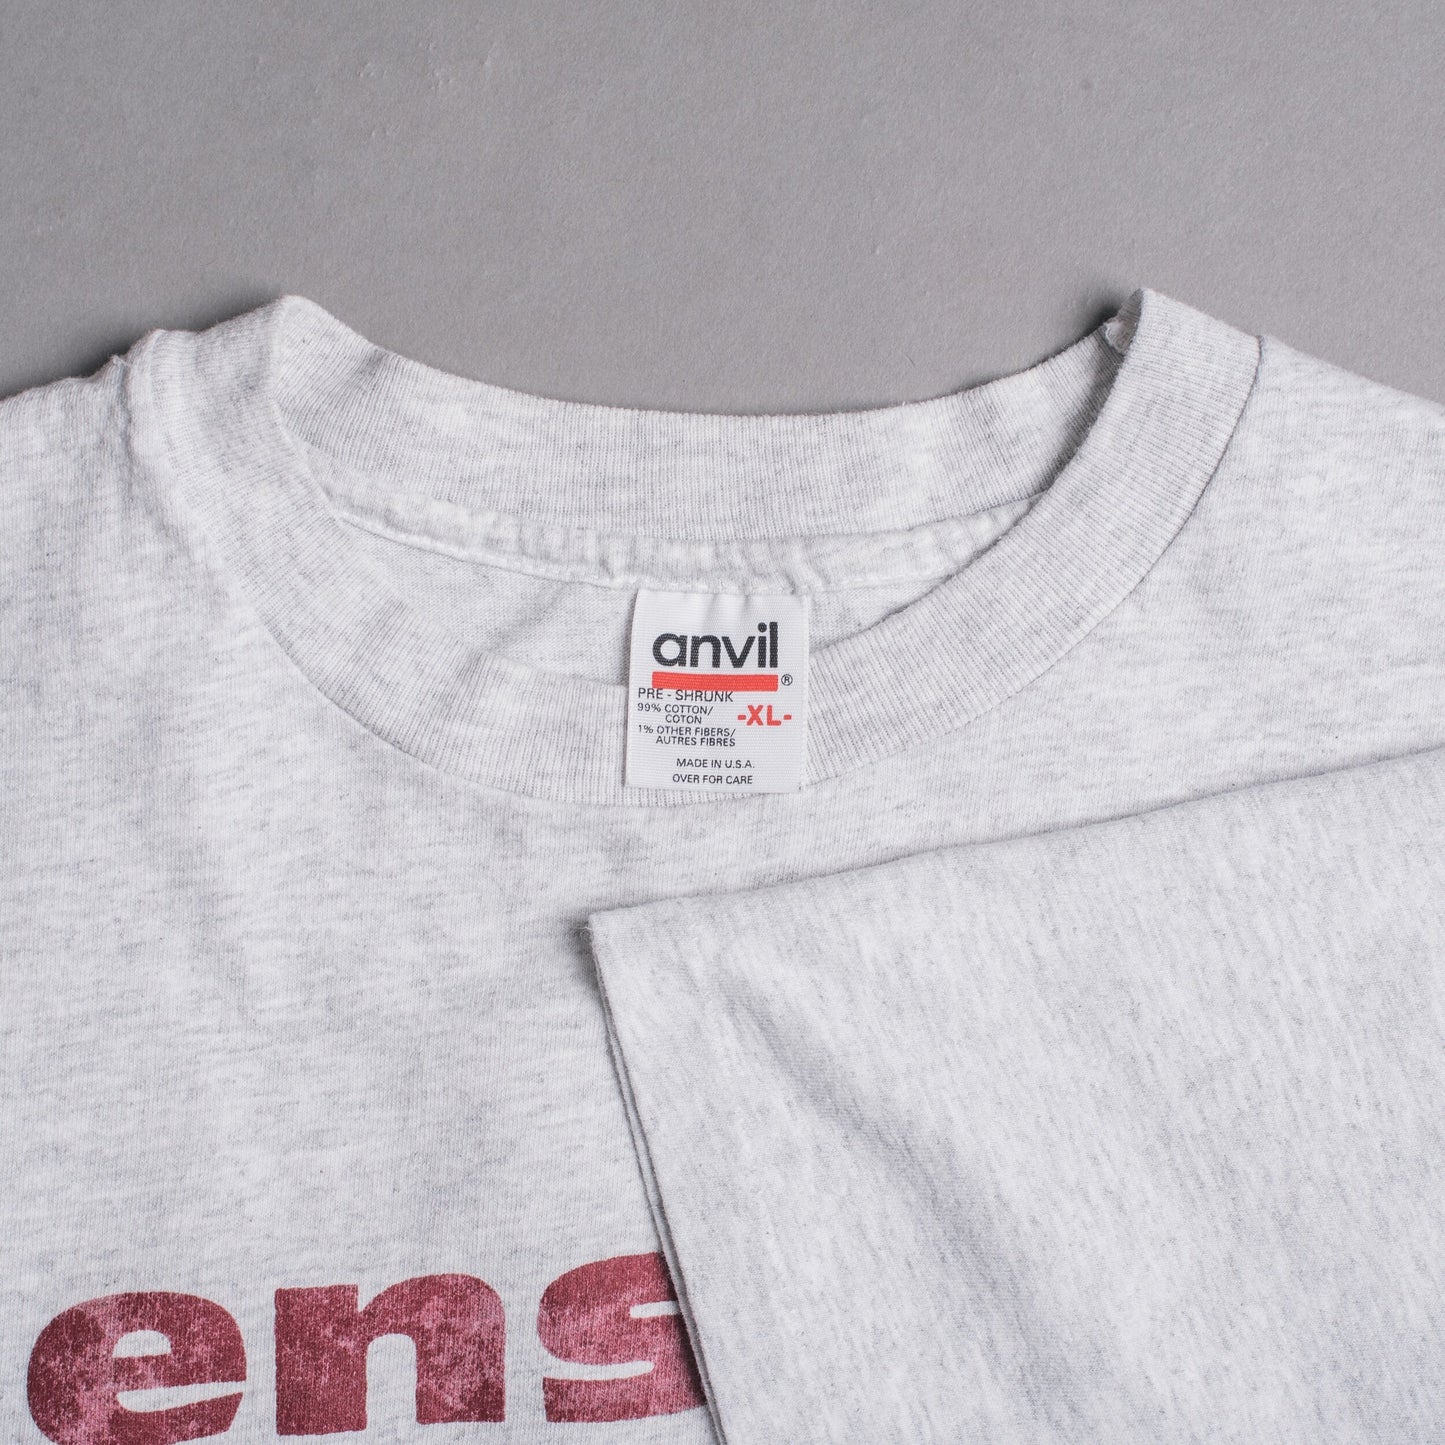 Vintage 90’s Ensign T-Shirt